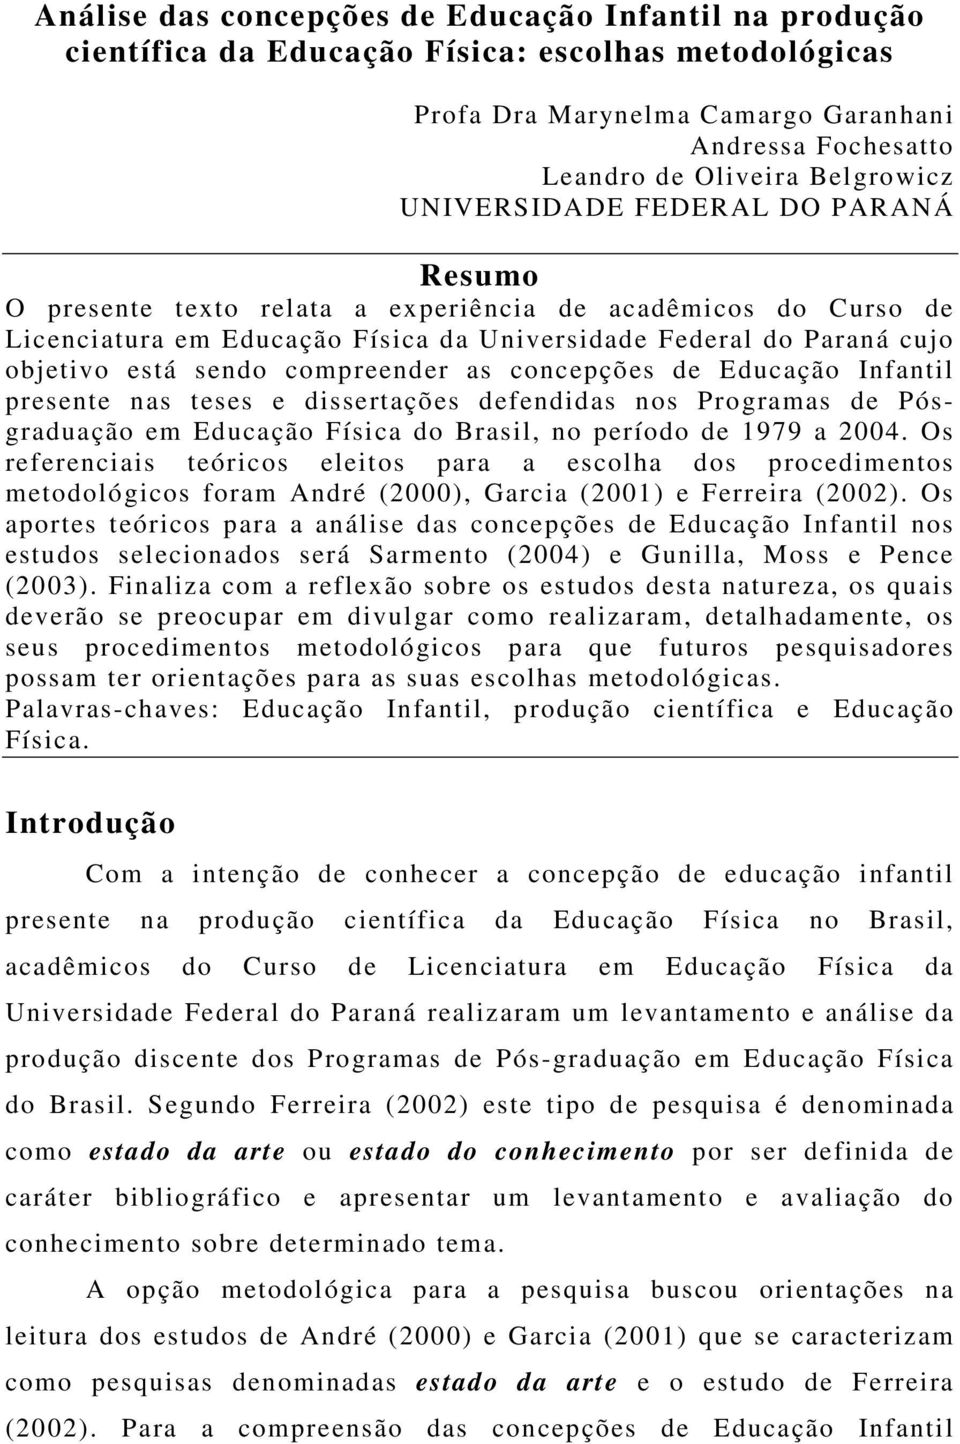 compreender as concepções de Educação Infantil presente nas teses e dissertações defendidas nos Programas de Pósgraduação em Educação Física do Brasil, no período de 1979 a 2004.